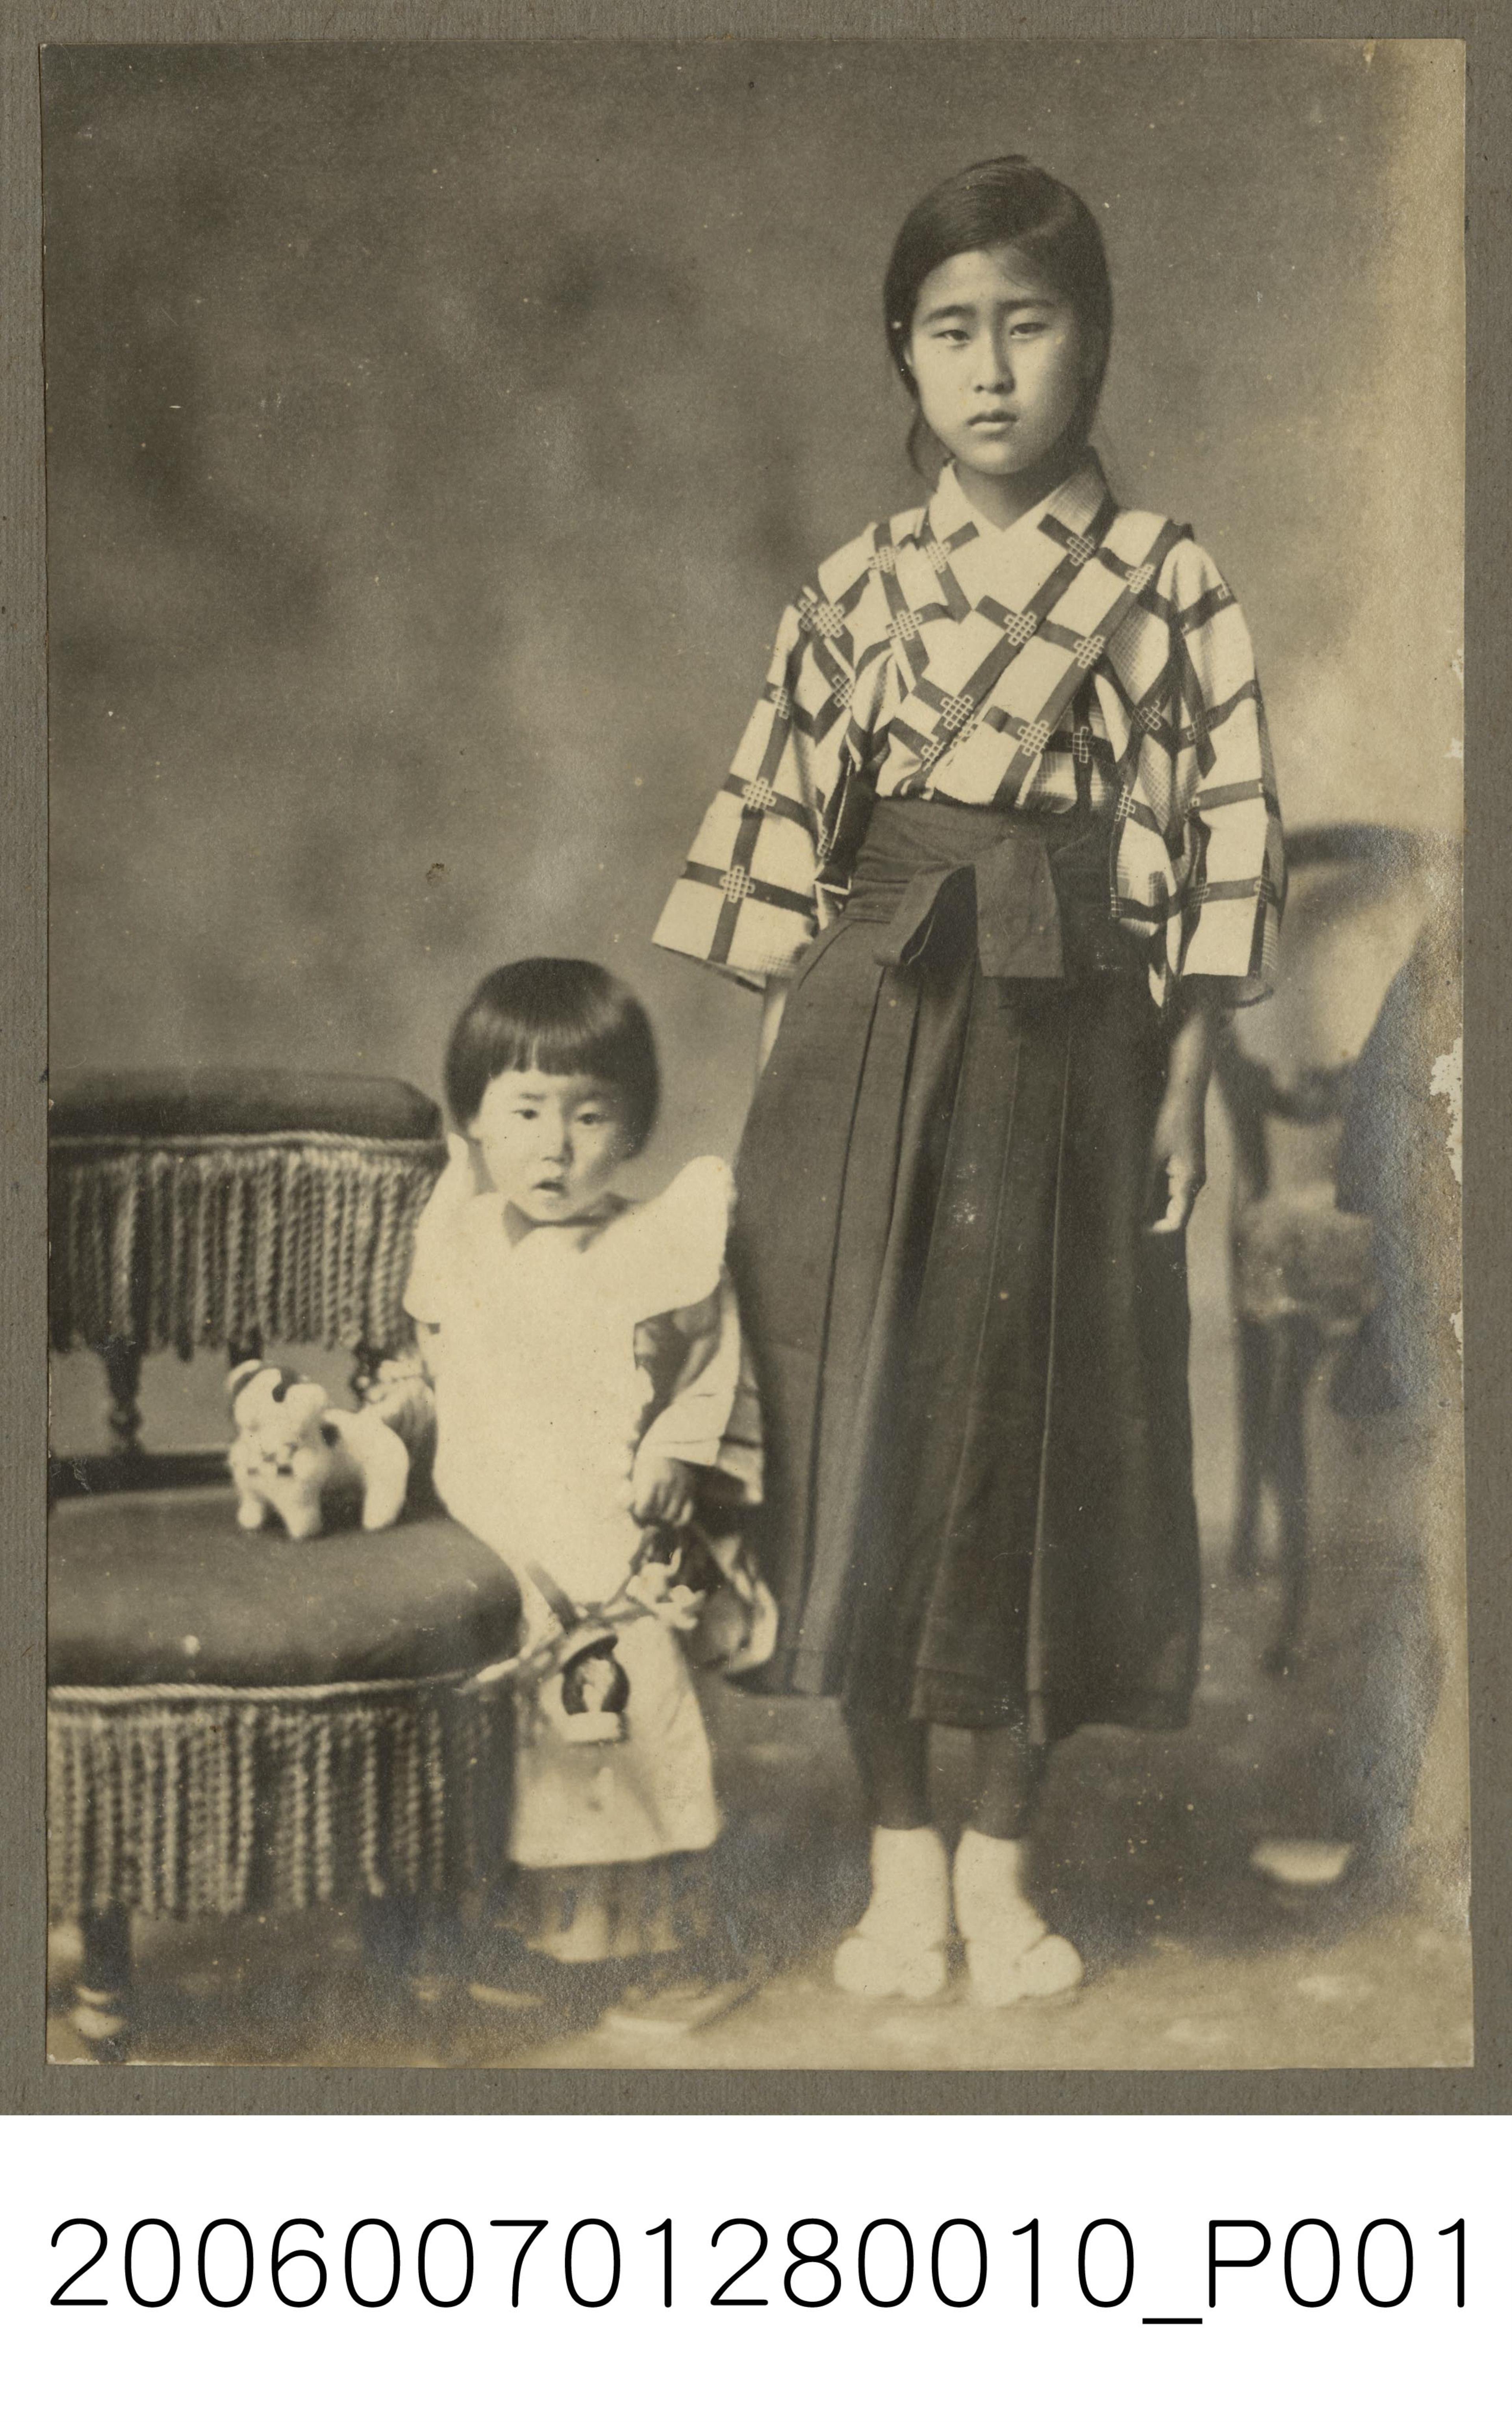 兩名著和服的女孩合照 (共1張)